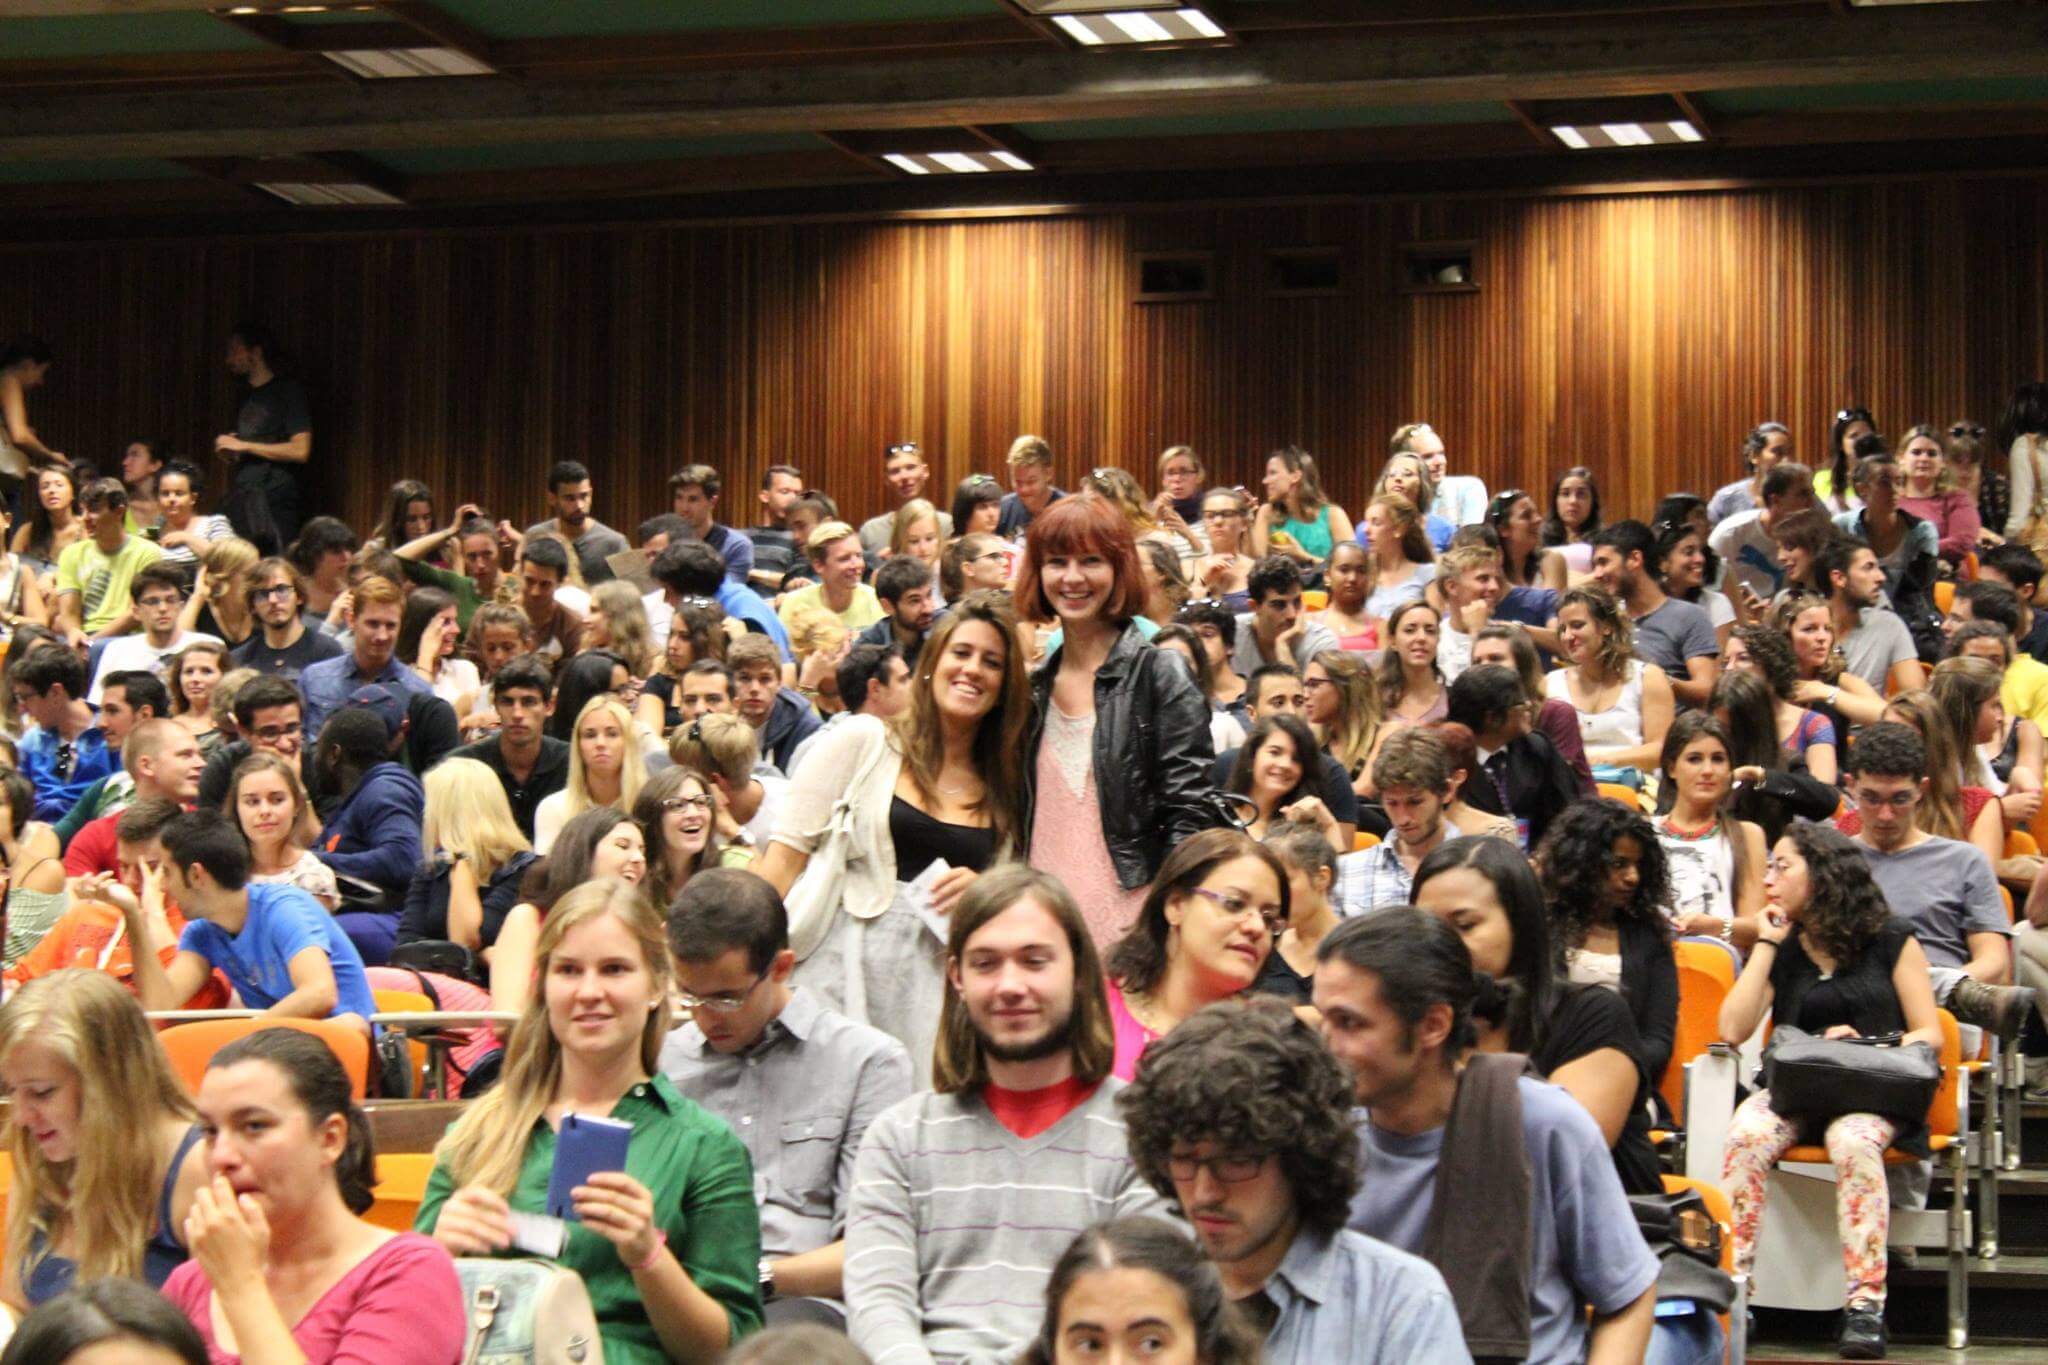 Đại học Coimbra luôn chào đón mọi sinh viên đến học tập và trải nghiệm